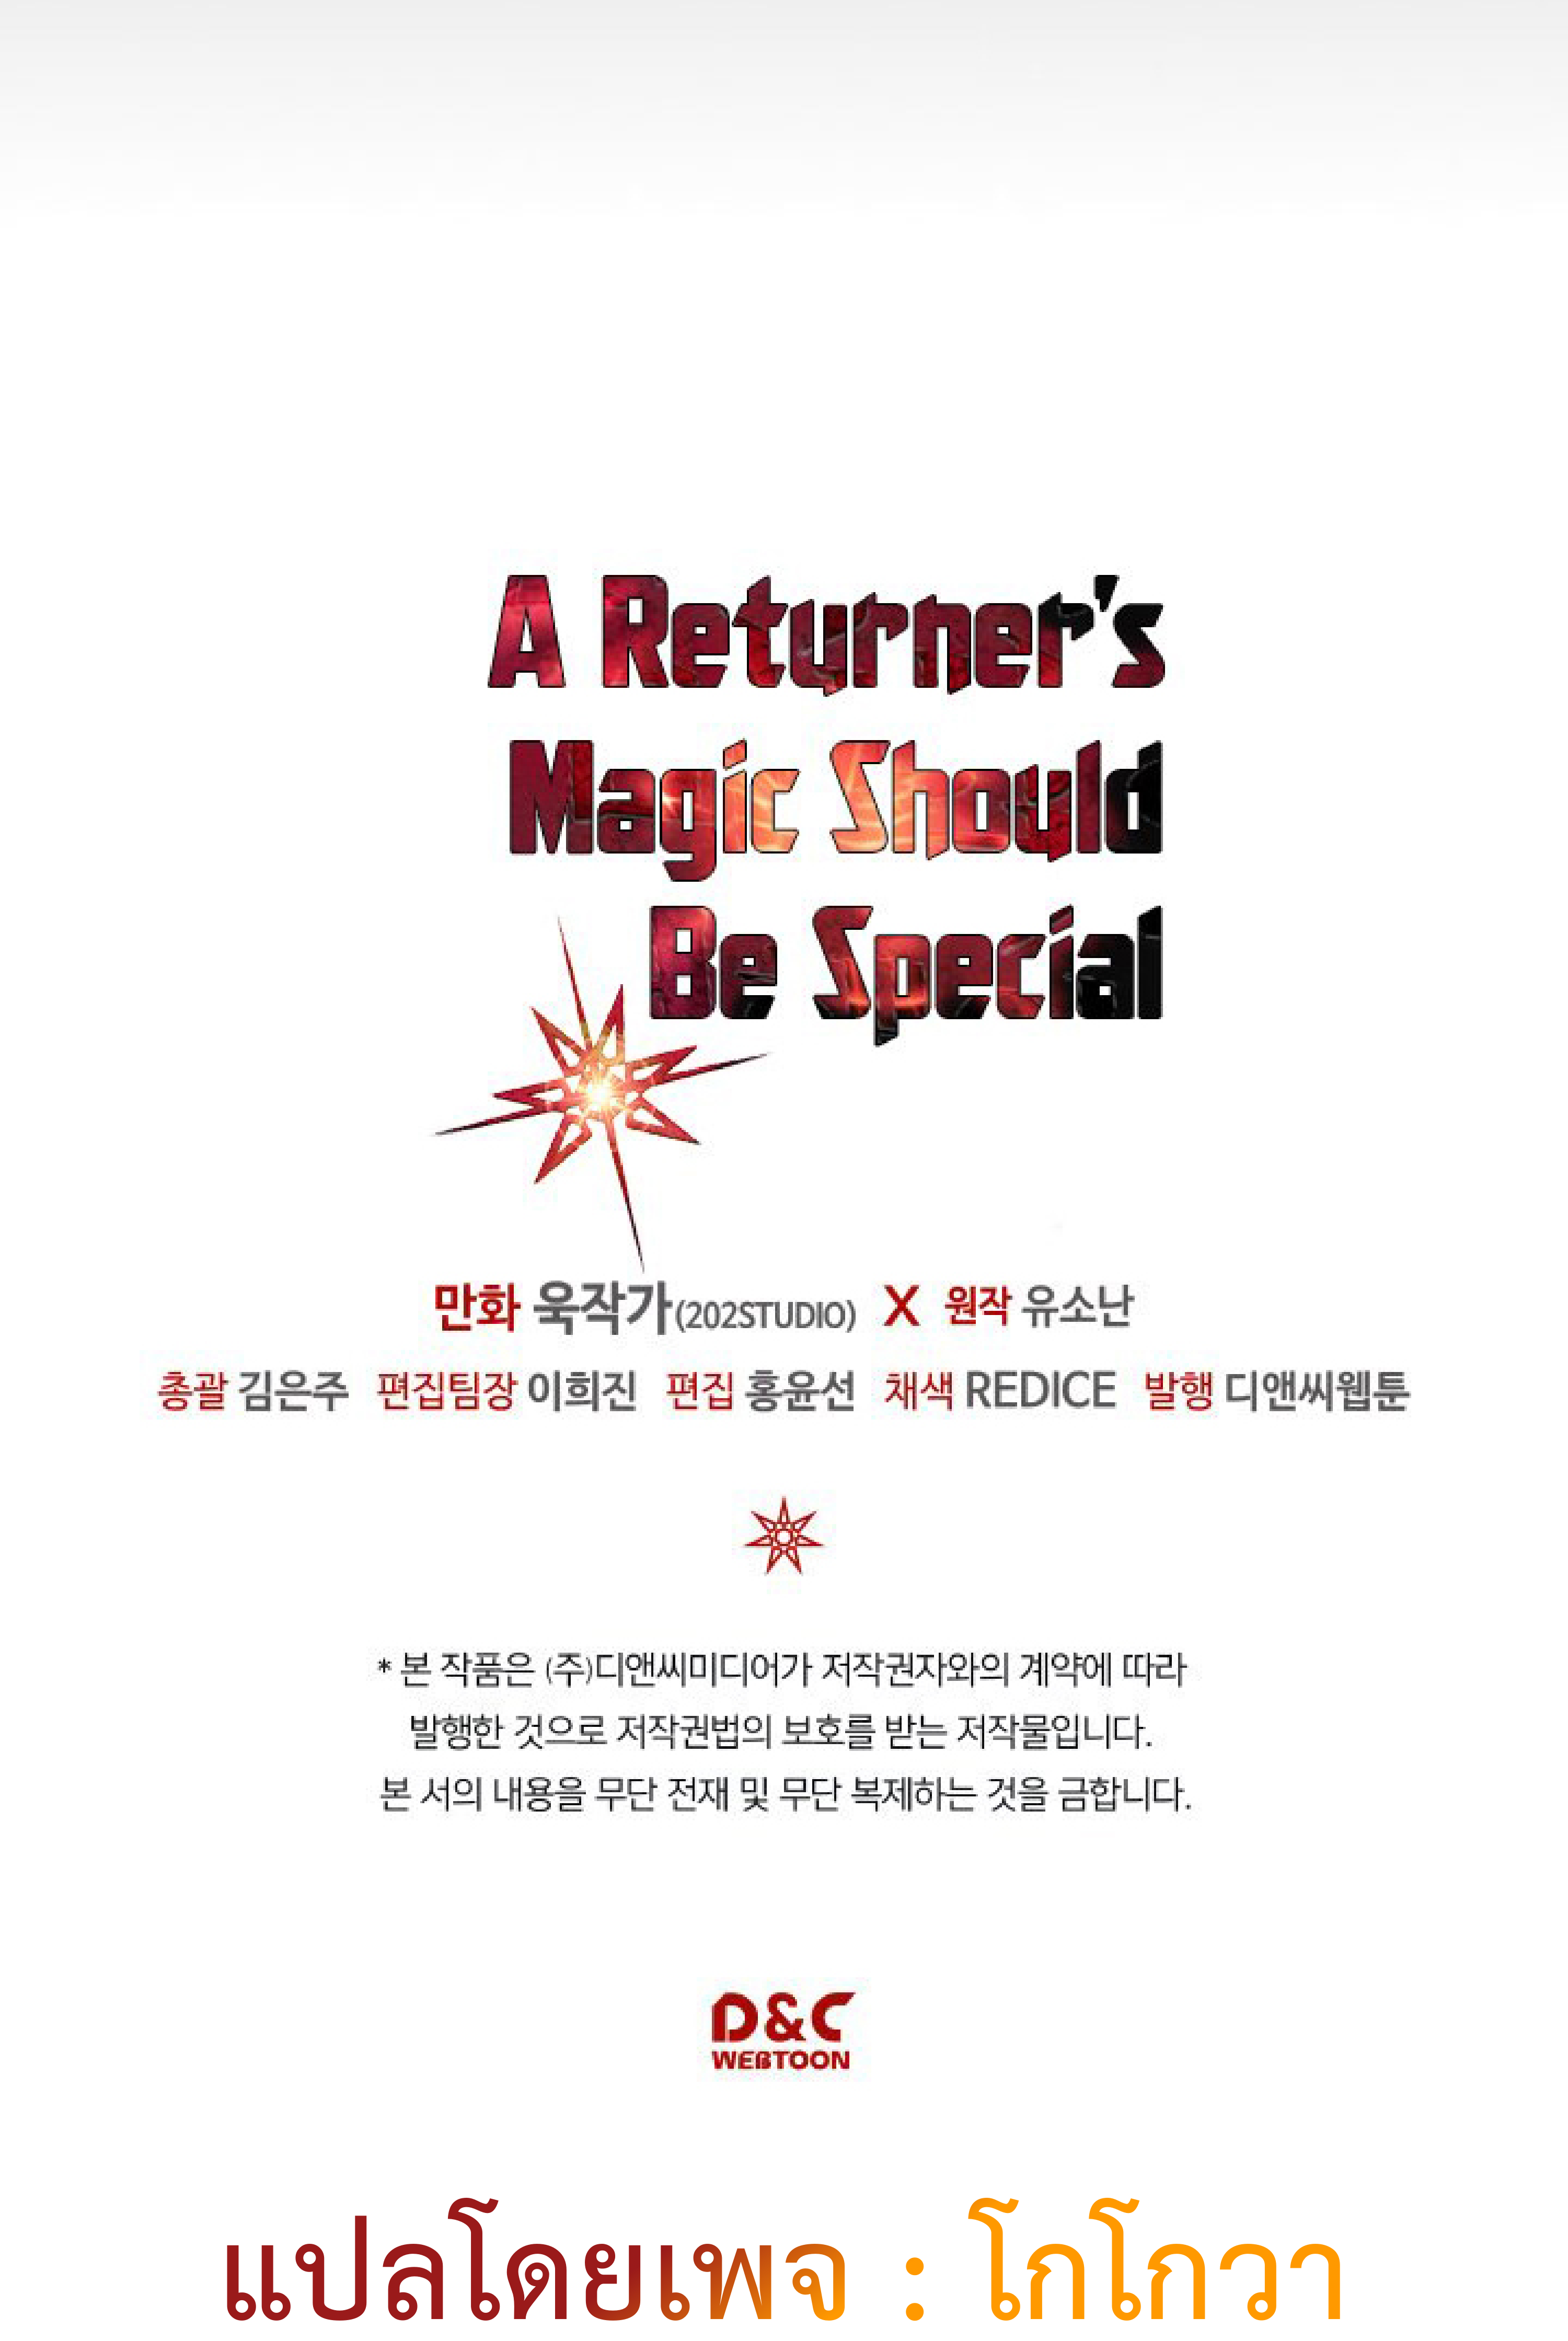 A Returner’s Magic Should Be Special116 57